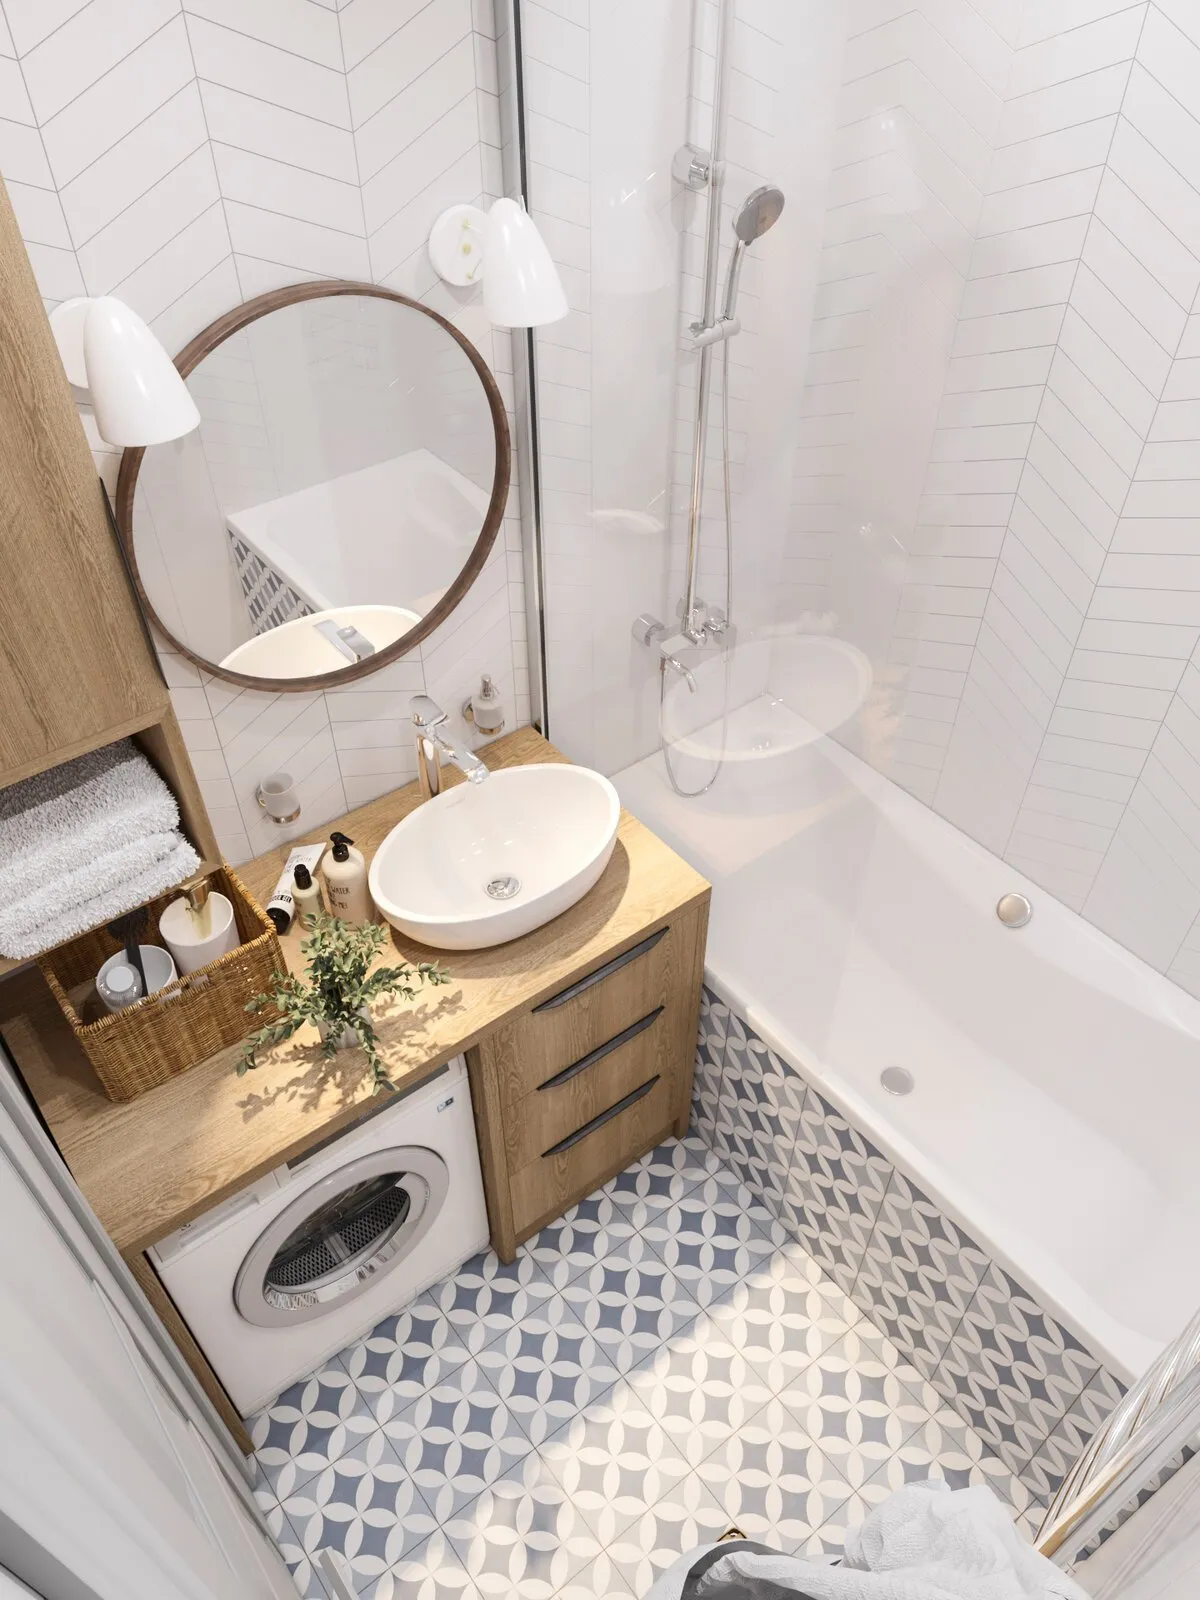 Ремонт ванной комнаты в хрущевке - цена, отзывы, частные объявления на YouDo